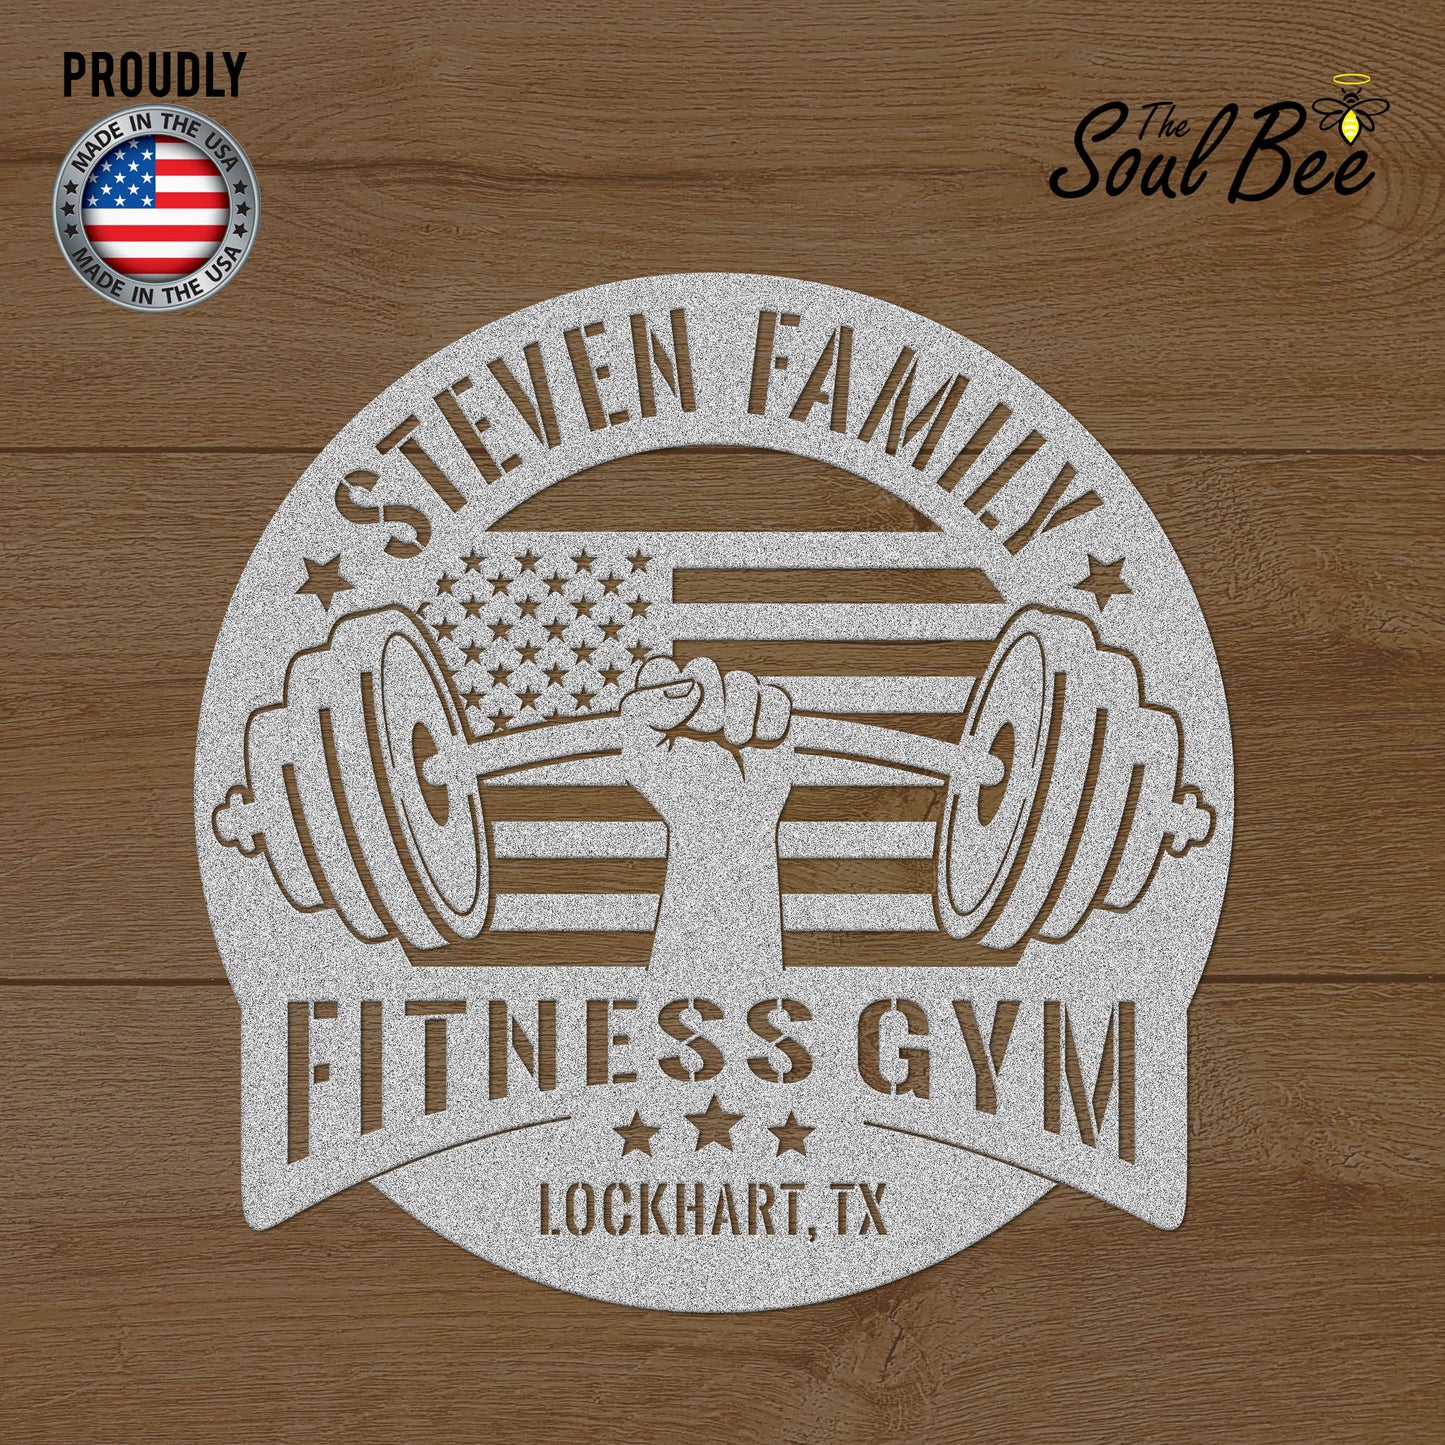 Panneau de gym personnalisé pour studio de fitness familial aux États-Unis